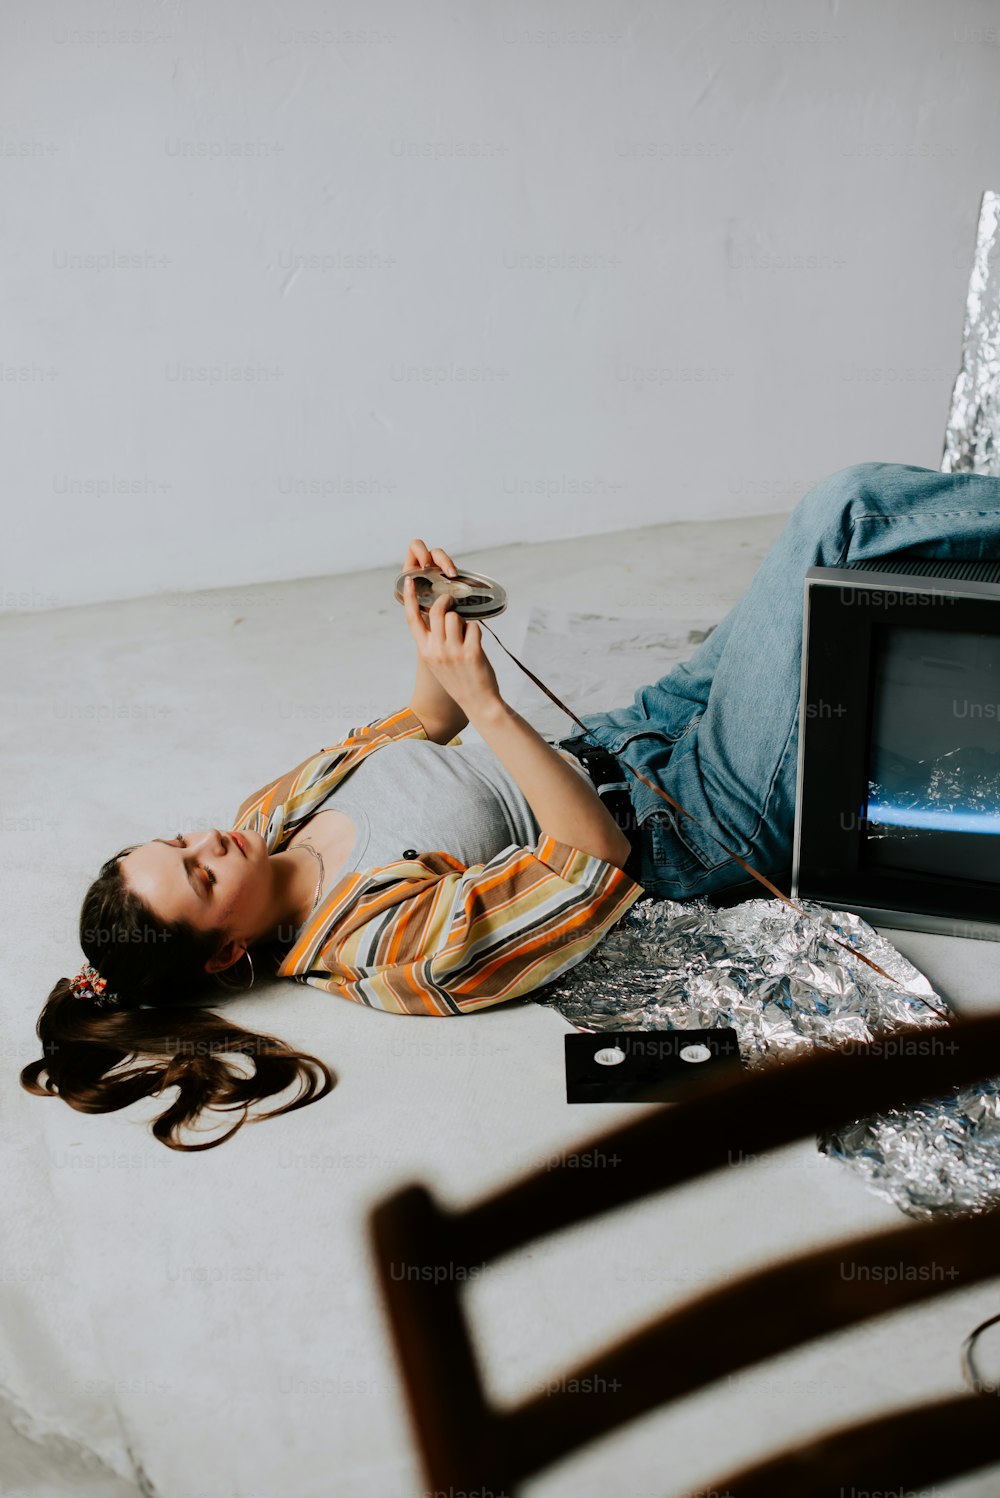 Una mujer tendida en el suelo junto a un televisor